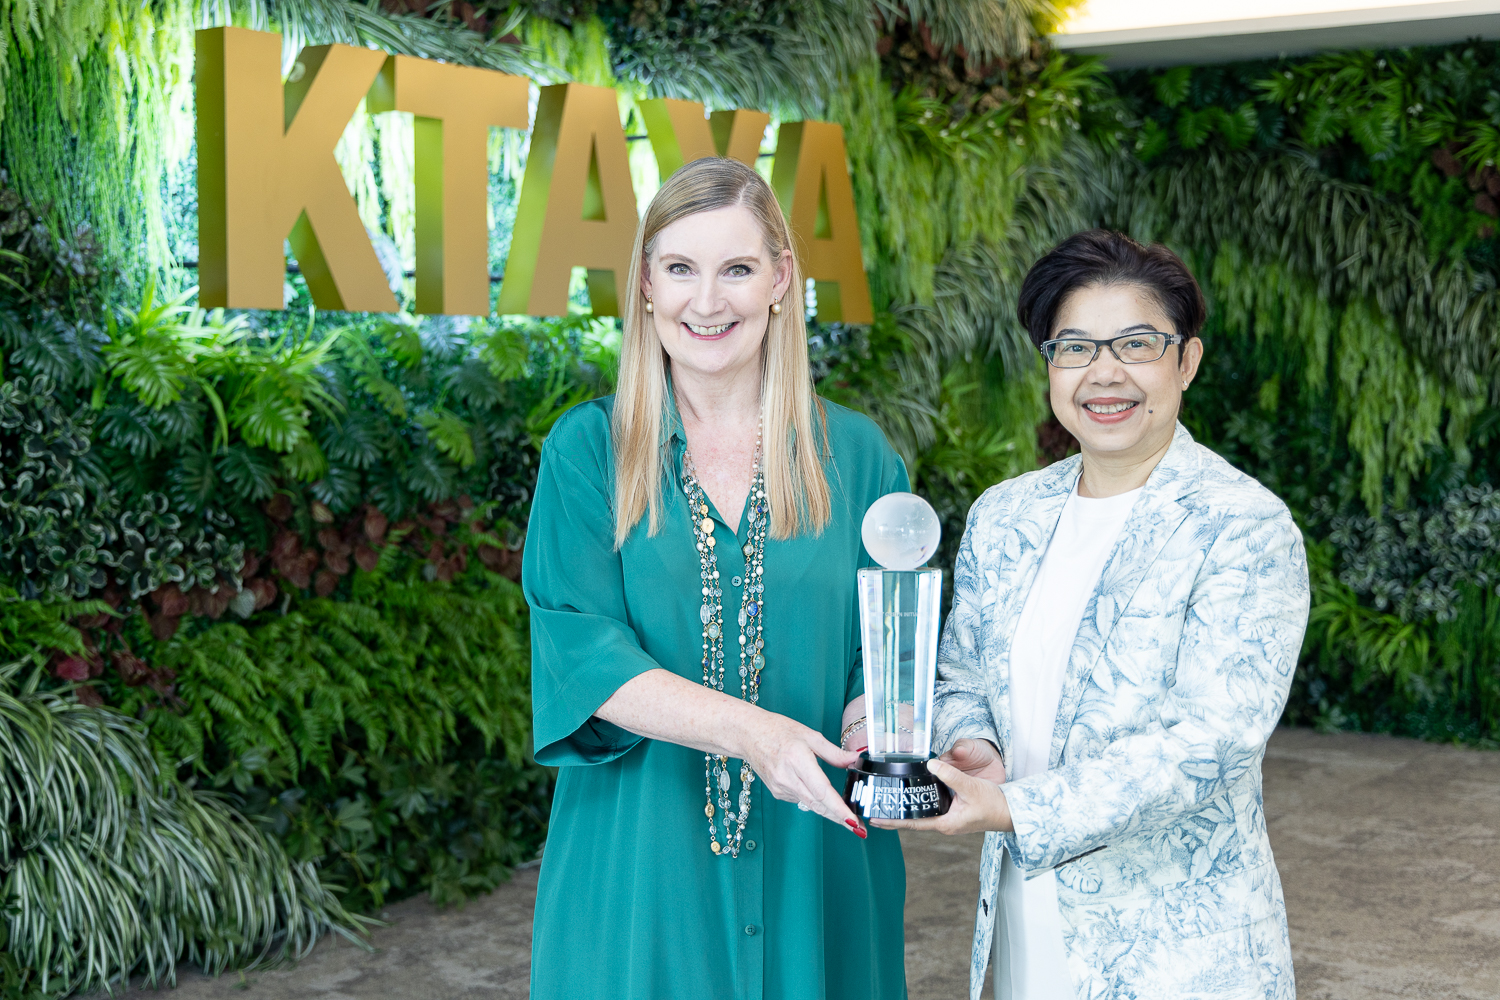 กรุงไทย-แอกซ่า ประกันชีวิต ยืนหนึ่งผู้นำด้าน Green Insurer คว้ารางวัลใหญ่ระดับนานาชาติ 3 ปีซ้อน จาก International Finance Awards 2023